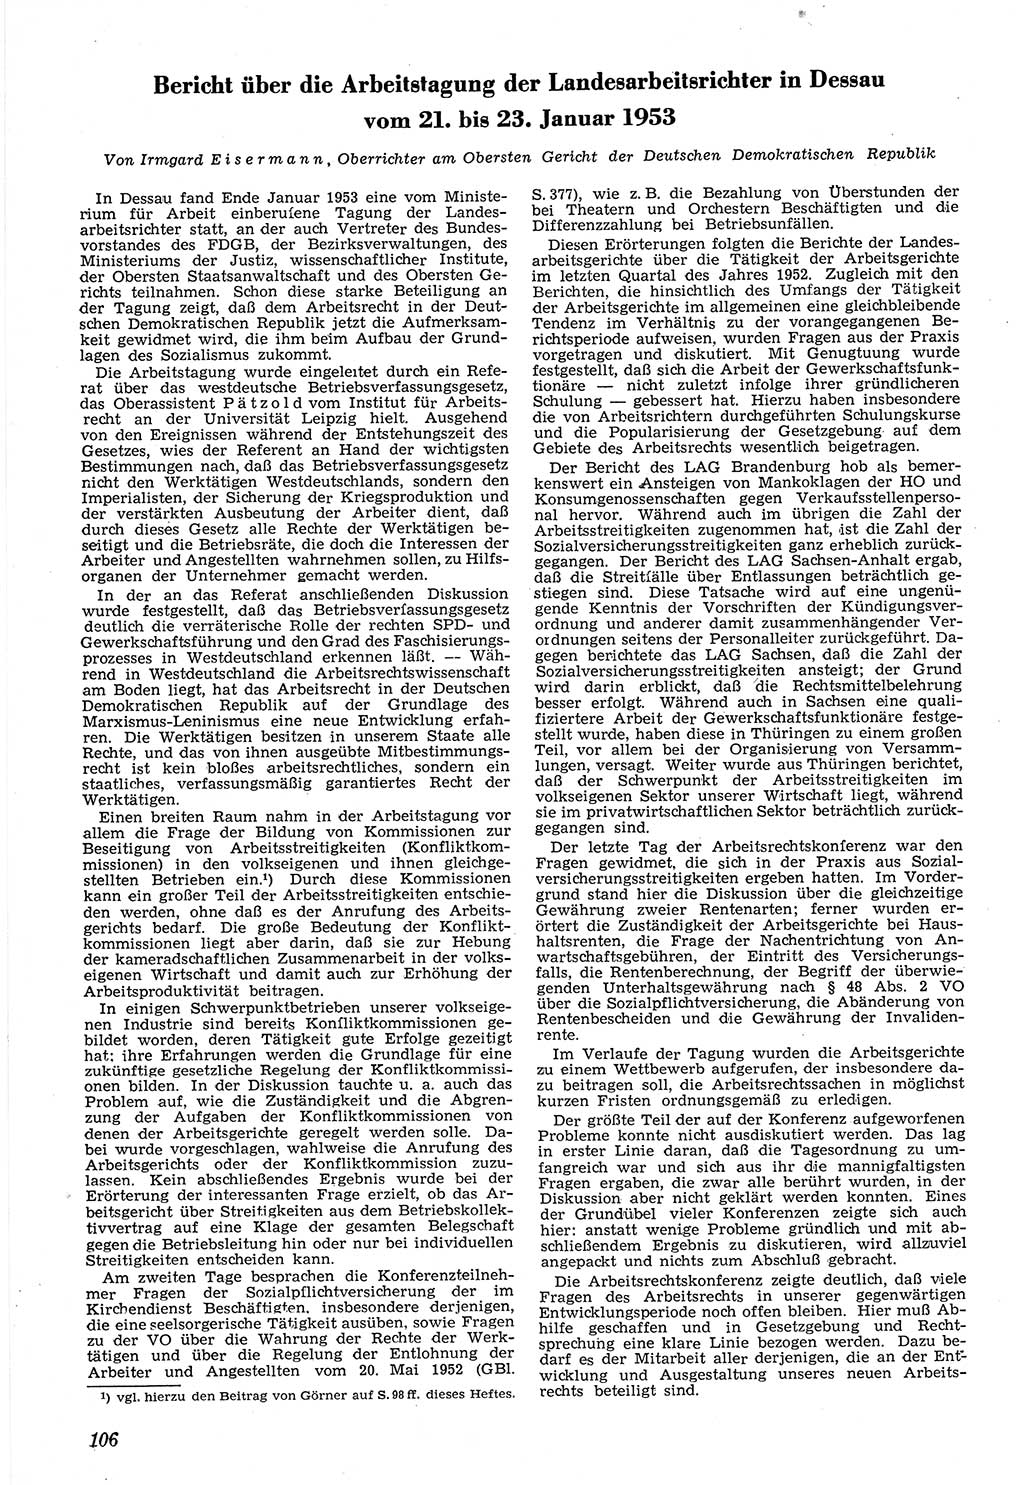 Neue Justiz (NJ), Zeitschrift für Recht und Rechtswissenschaft [Deutsche Demokratische Republik (DDR)], 7. Jahrgang 1953, Seite 106 (NJ DDR 1953, S. 106)